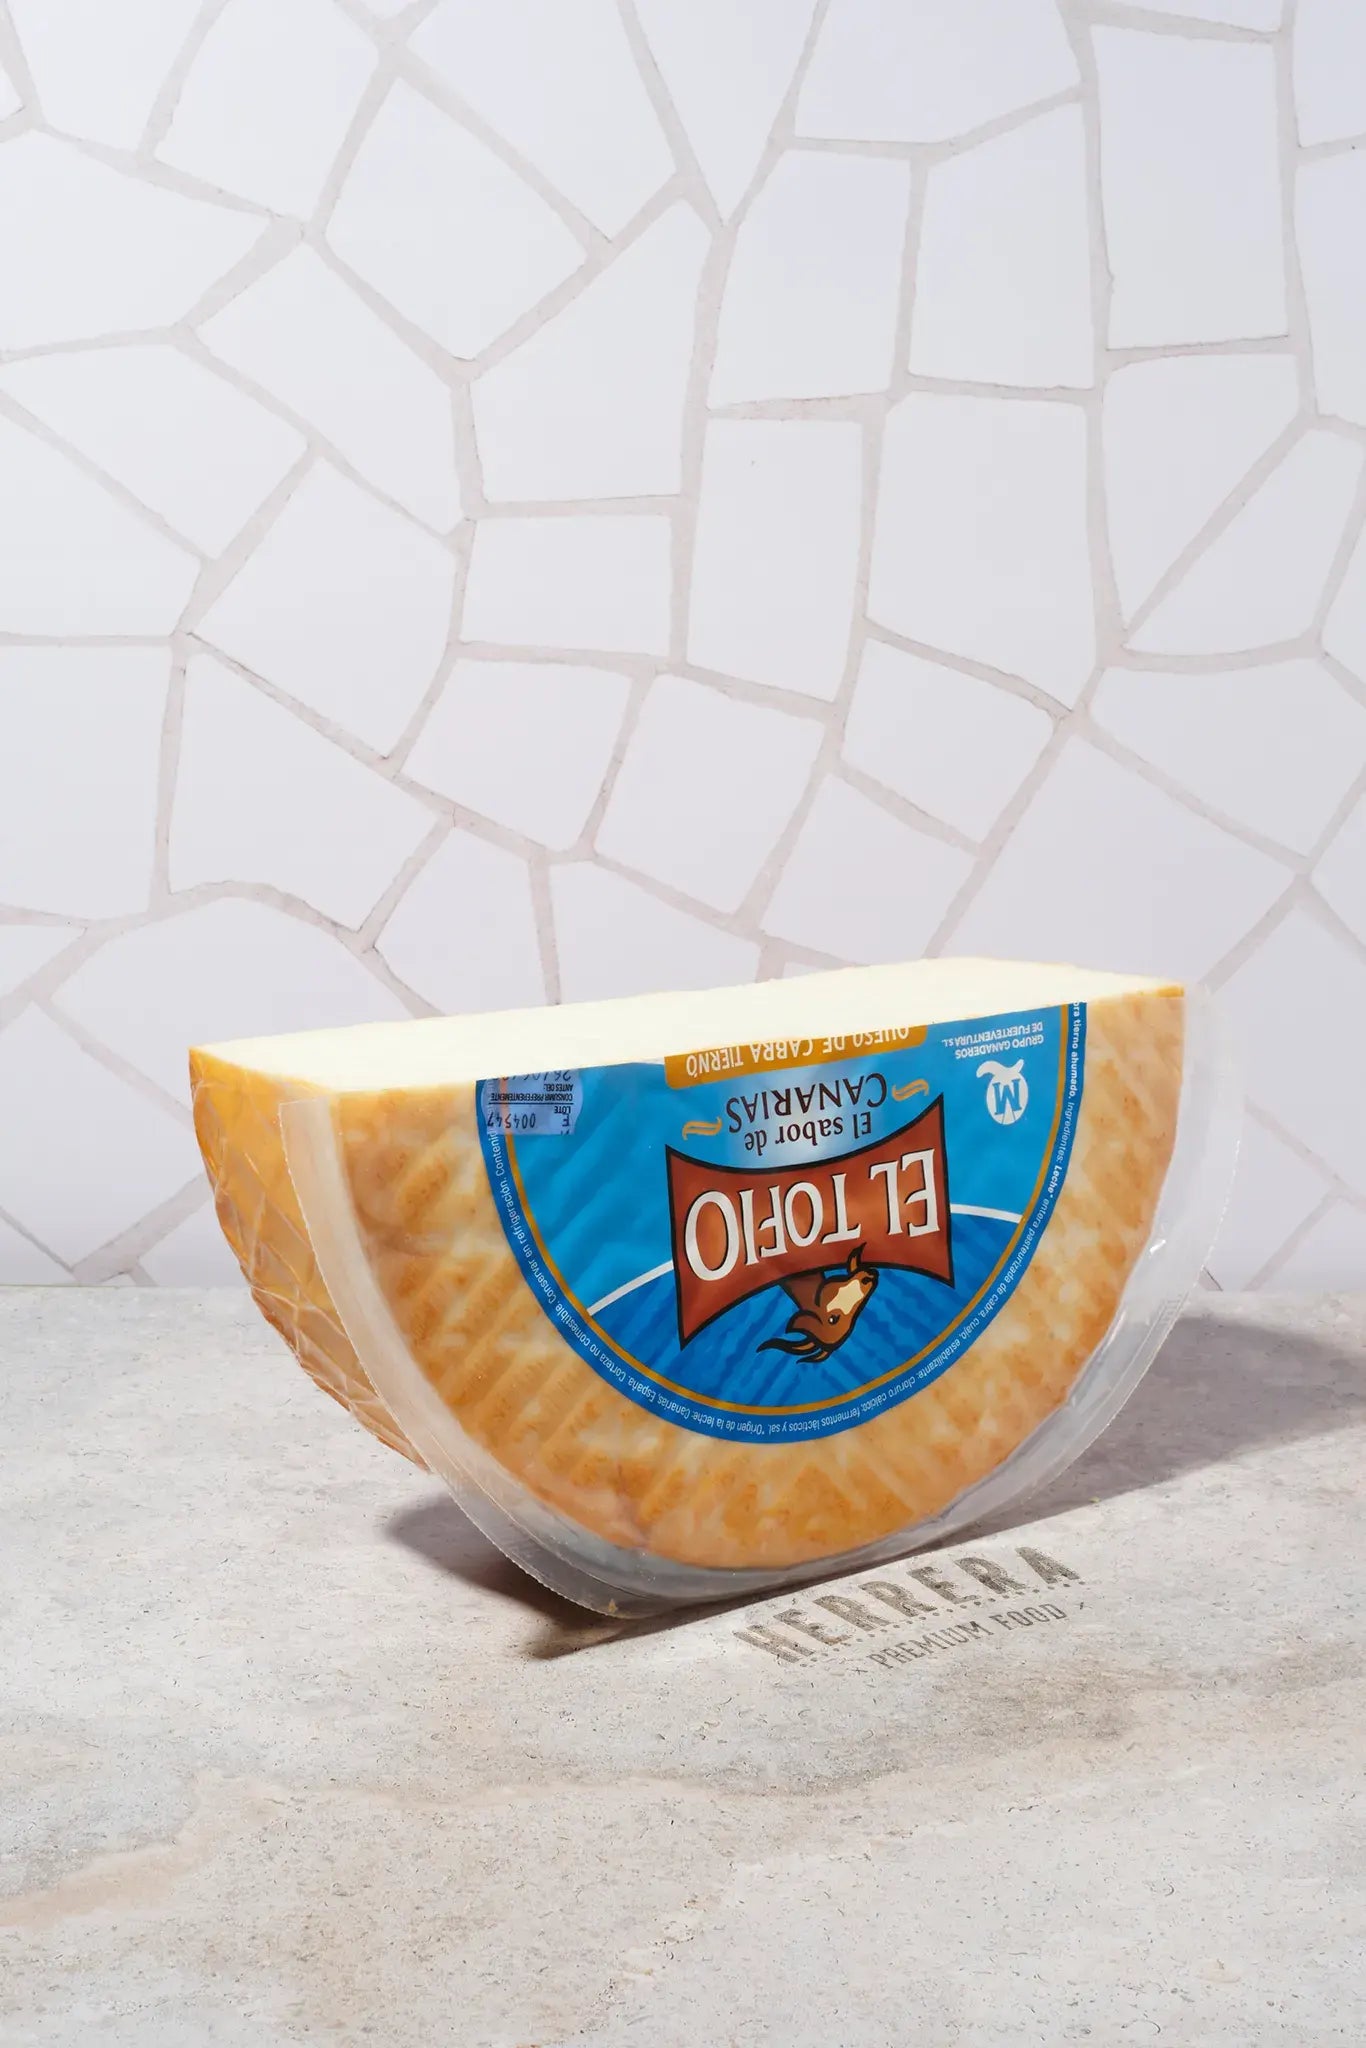 Saborea la excelencia canaria con el queso Maxorata Majorero de HerreraFood. ¡Disfruta de su auténtico sabor y textura